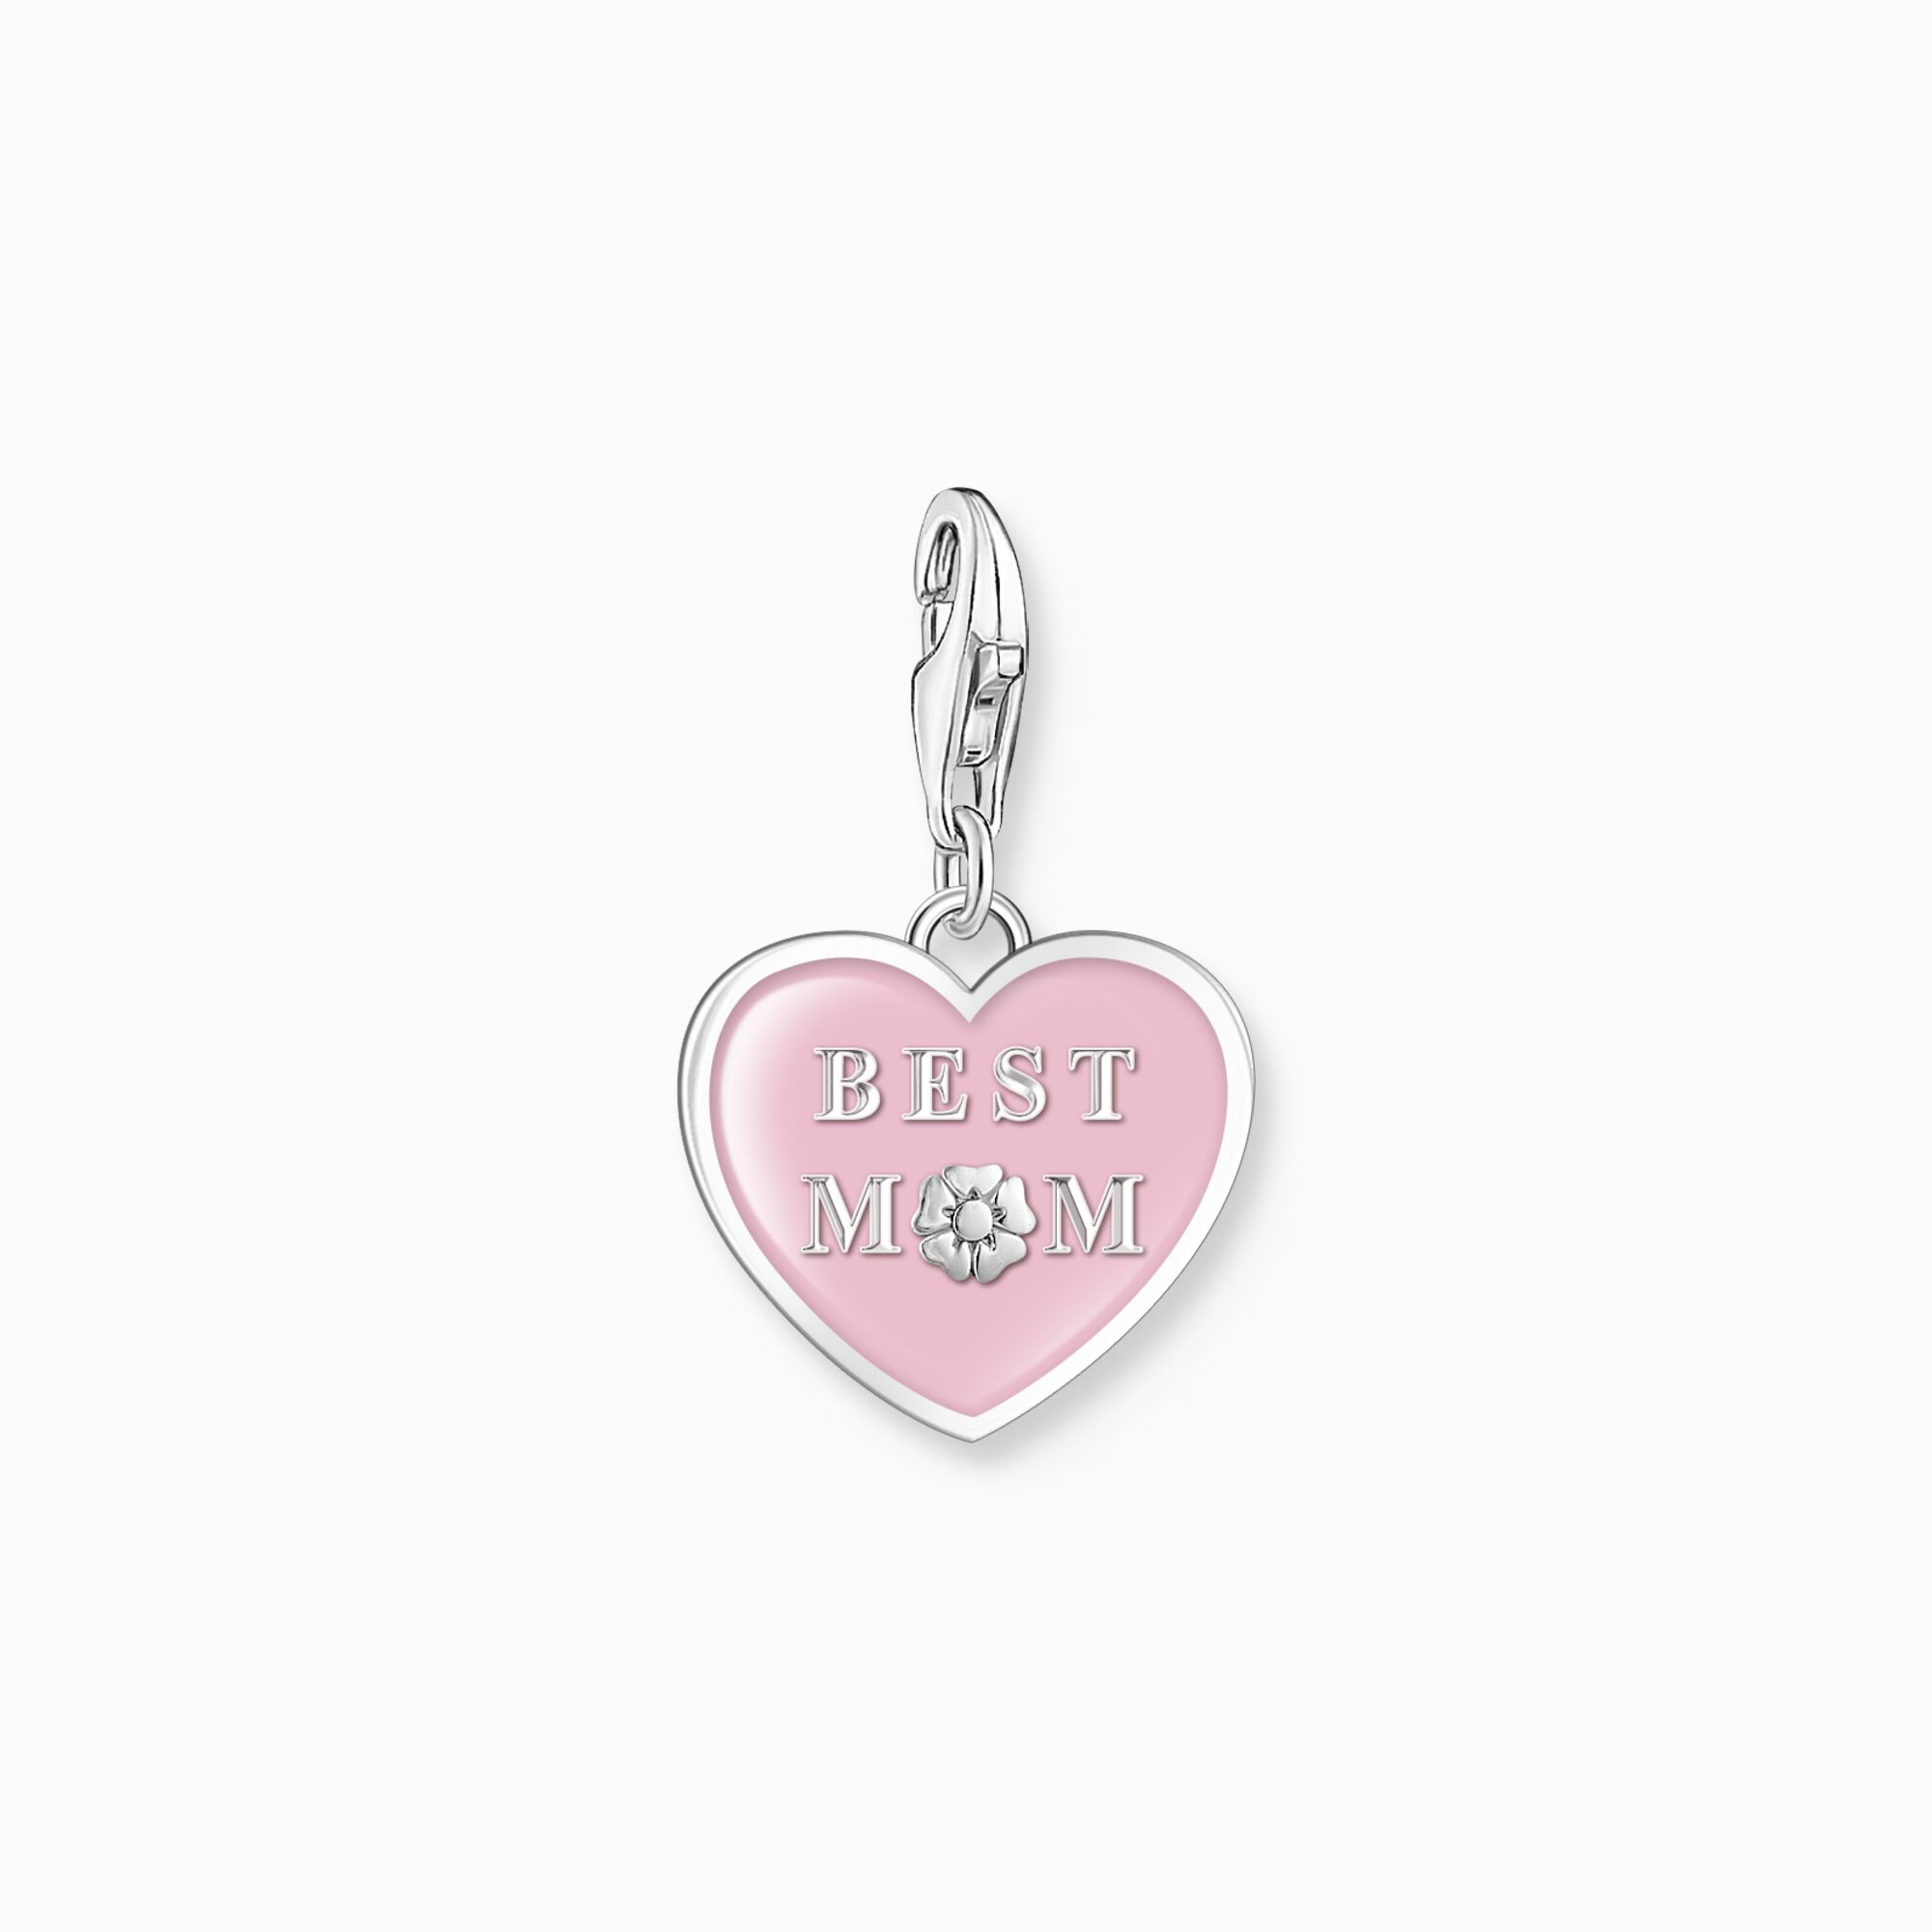 Colgante Charm coraz&oacute;n rosa con Best Mom plata de la colección Charm Club en la tienda online de THOMAS SABO